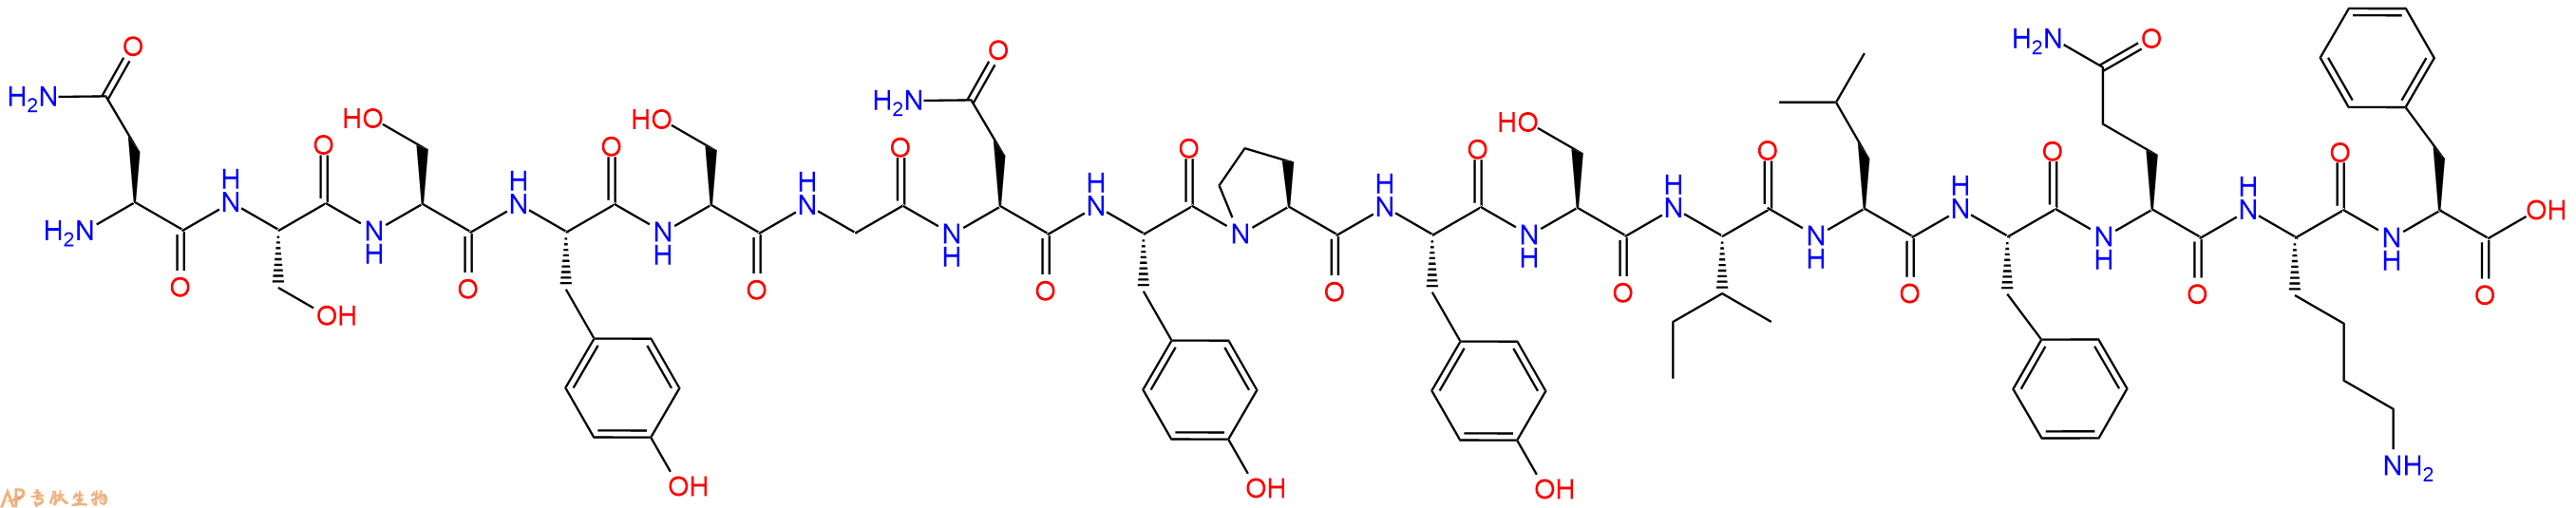 专肽生物产品H2N-Asn-Ser-Ser-Tyr-Ser-Gly-Asn-Tyr-Pro-Tyr-Ser-Ile-Leu-Phe-Gln-Lys-Phe-COOH